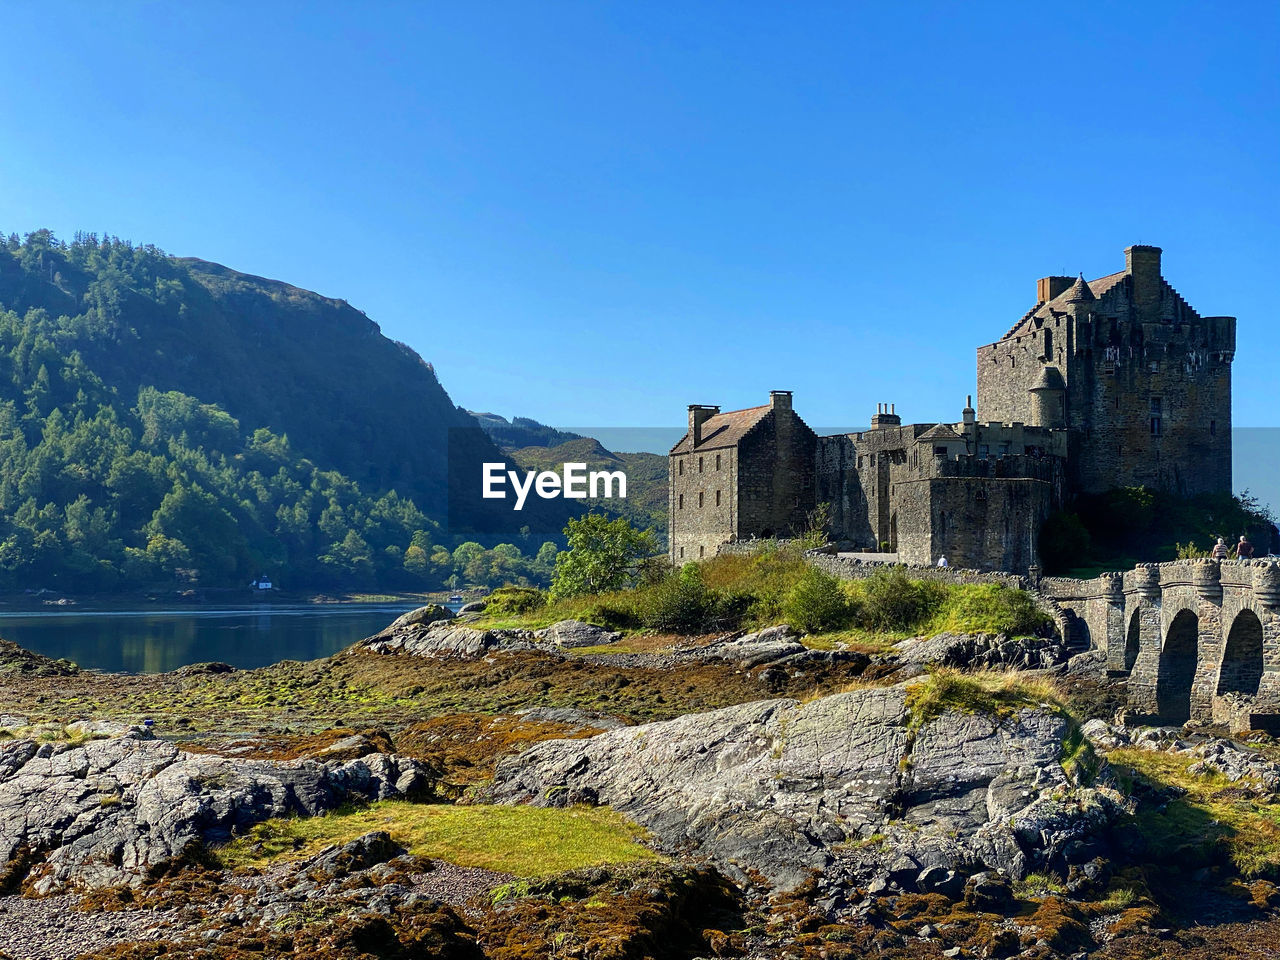 Eileen donan castle on the road to skye, scotland